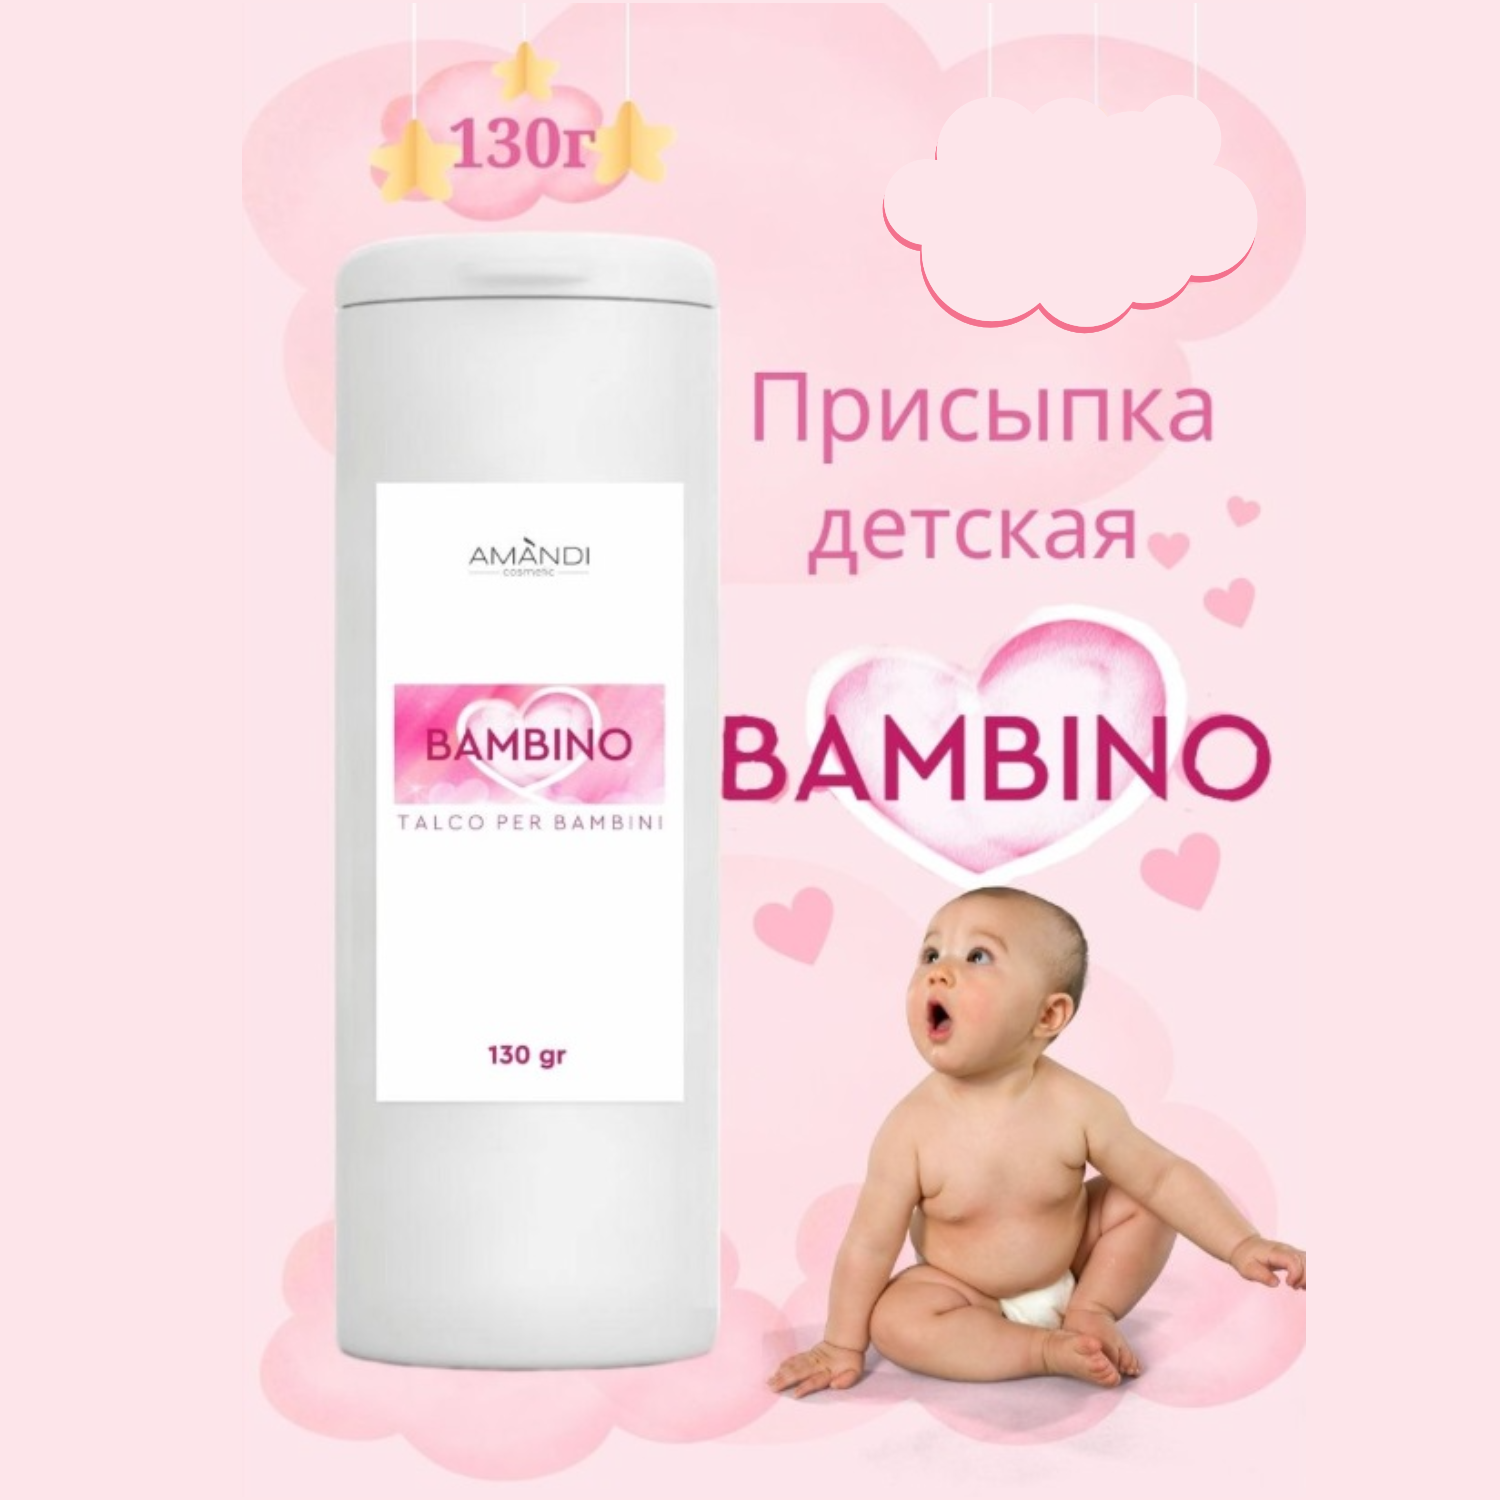 Присыпка детская AMANDI BAMBINO без отдушки 2 шт по 130 грамм - фото 2